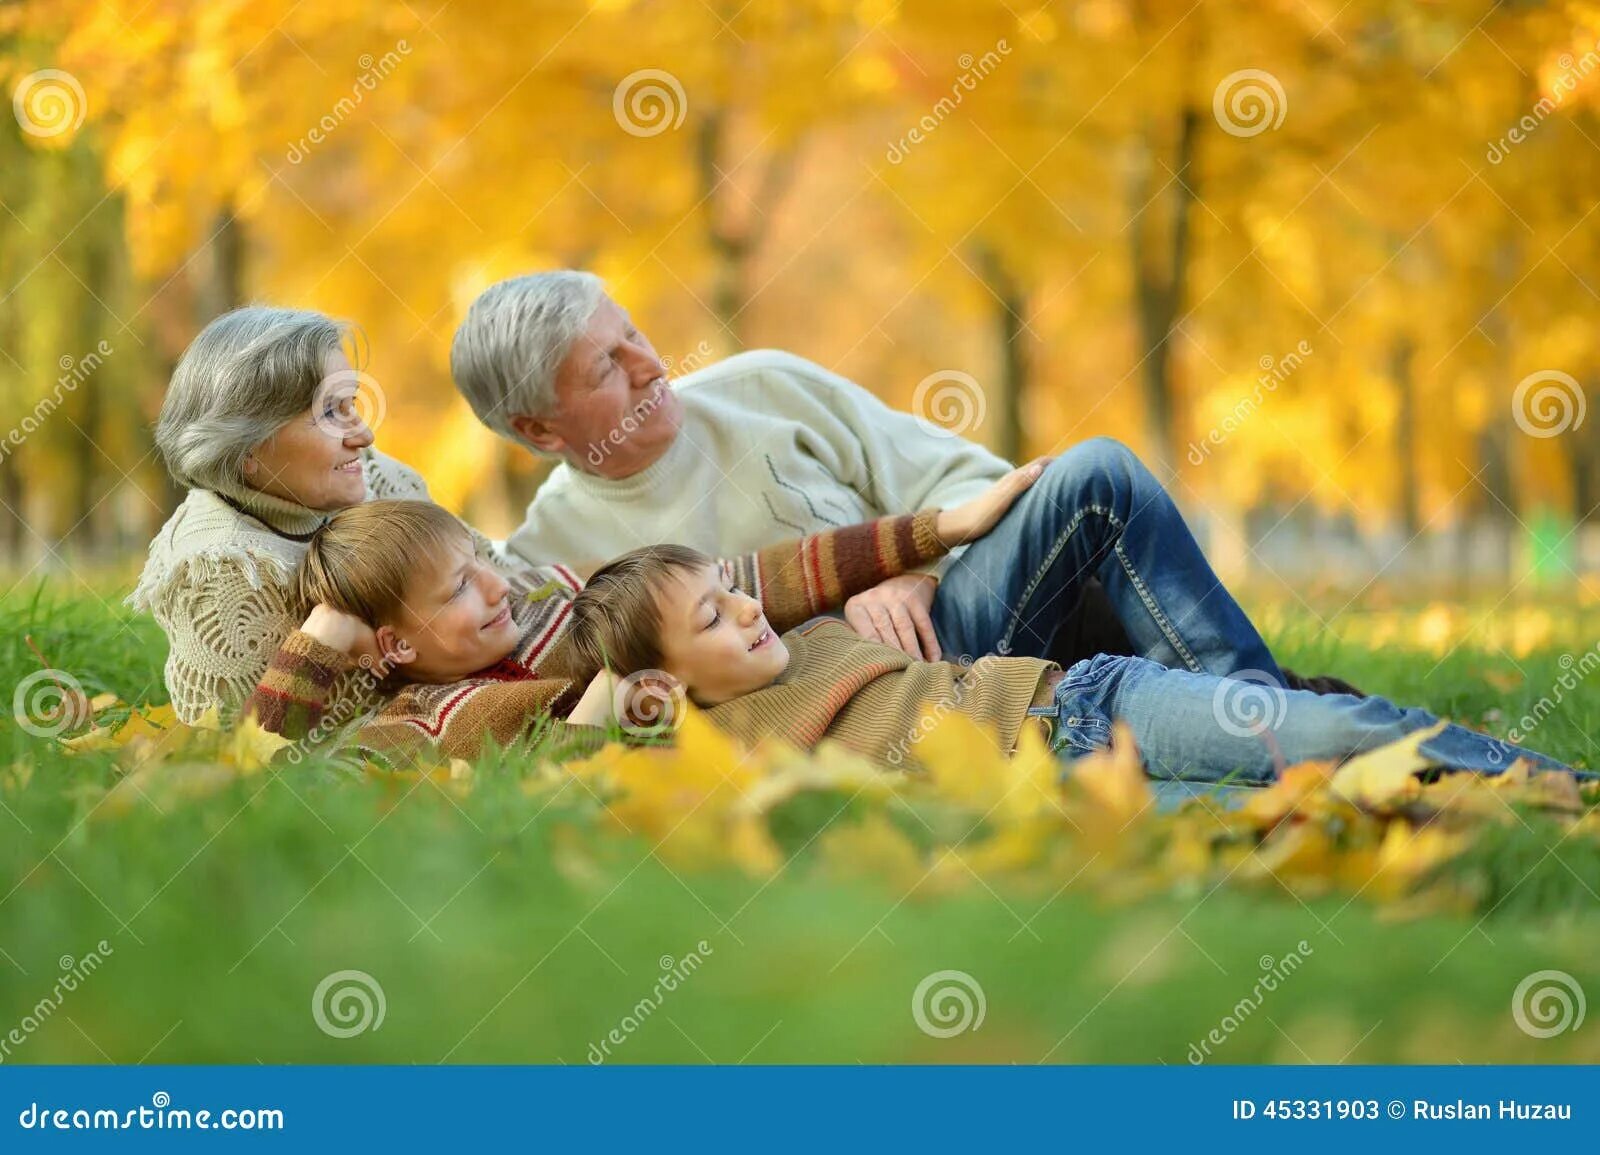 Дедушка и внучка в лесу. Дедушка и бабушка с внуком в парке. Фотосессия бабушка с внуком в парке осенью. Пожилые люди в парке с внуками. Пенсионеры с семьей на природе.